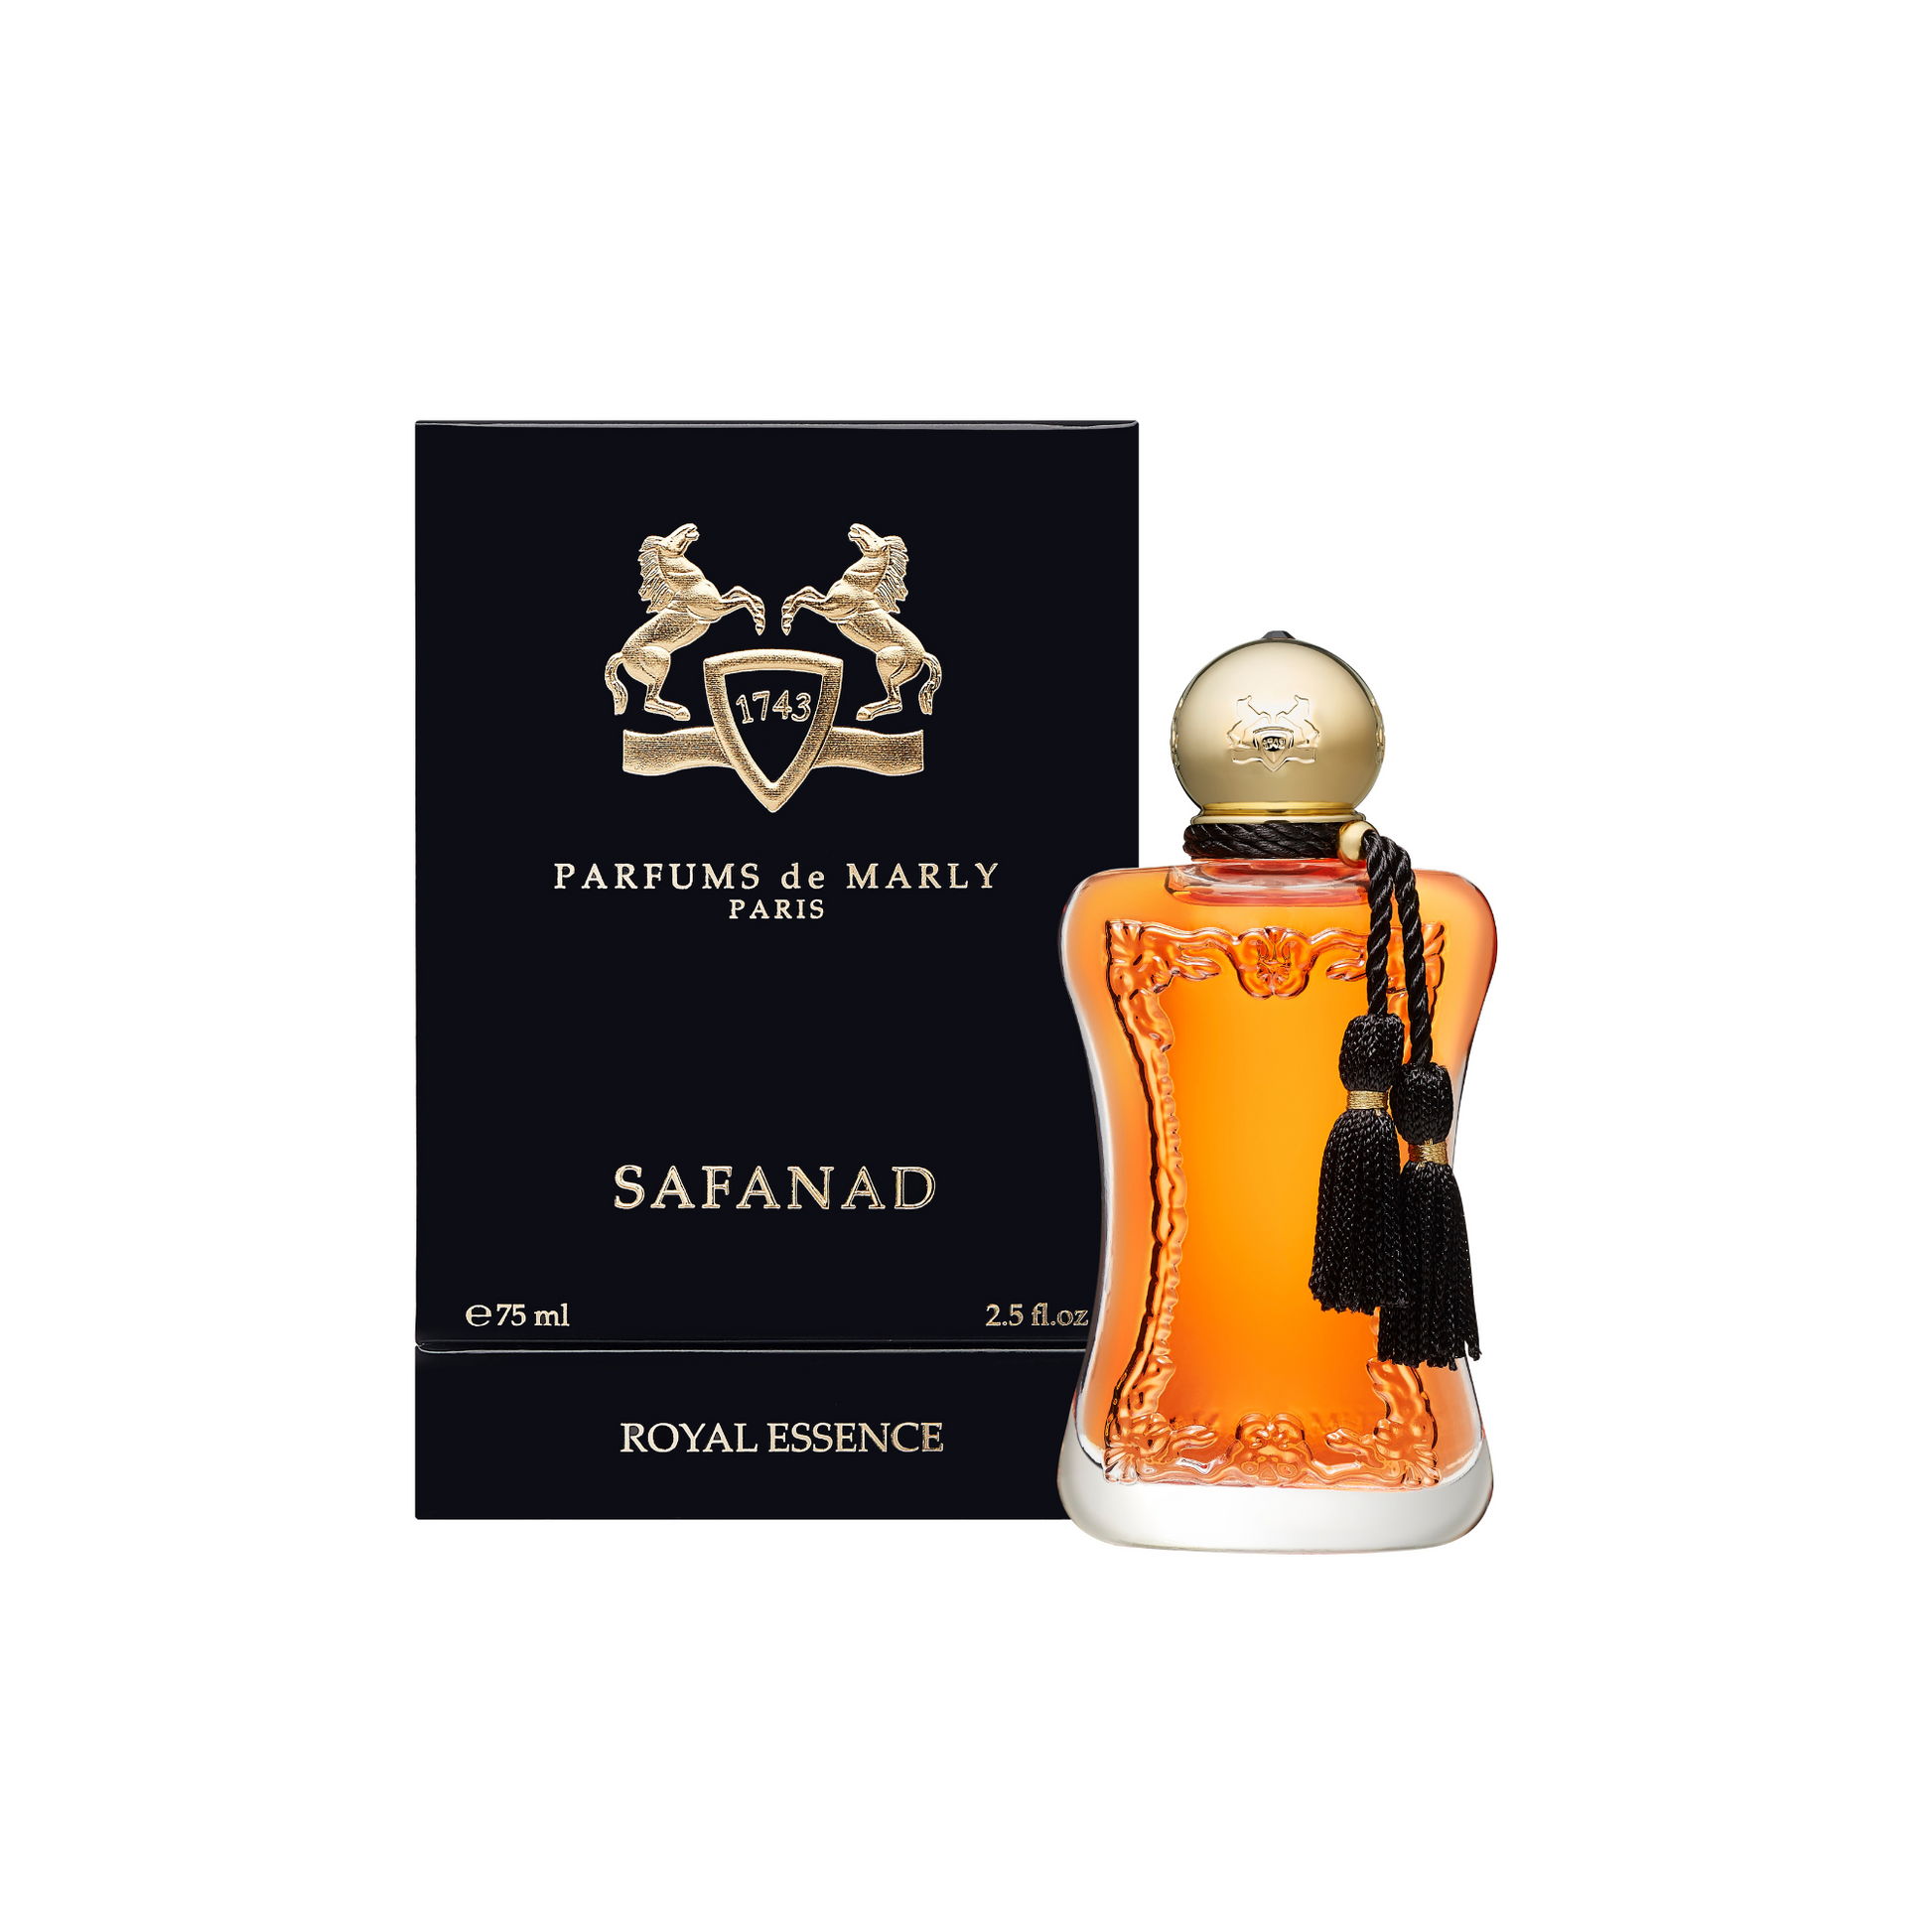 Parfums de Marly - Safanad.